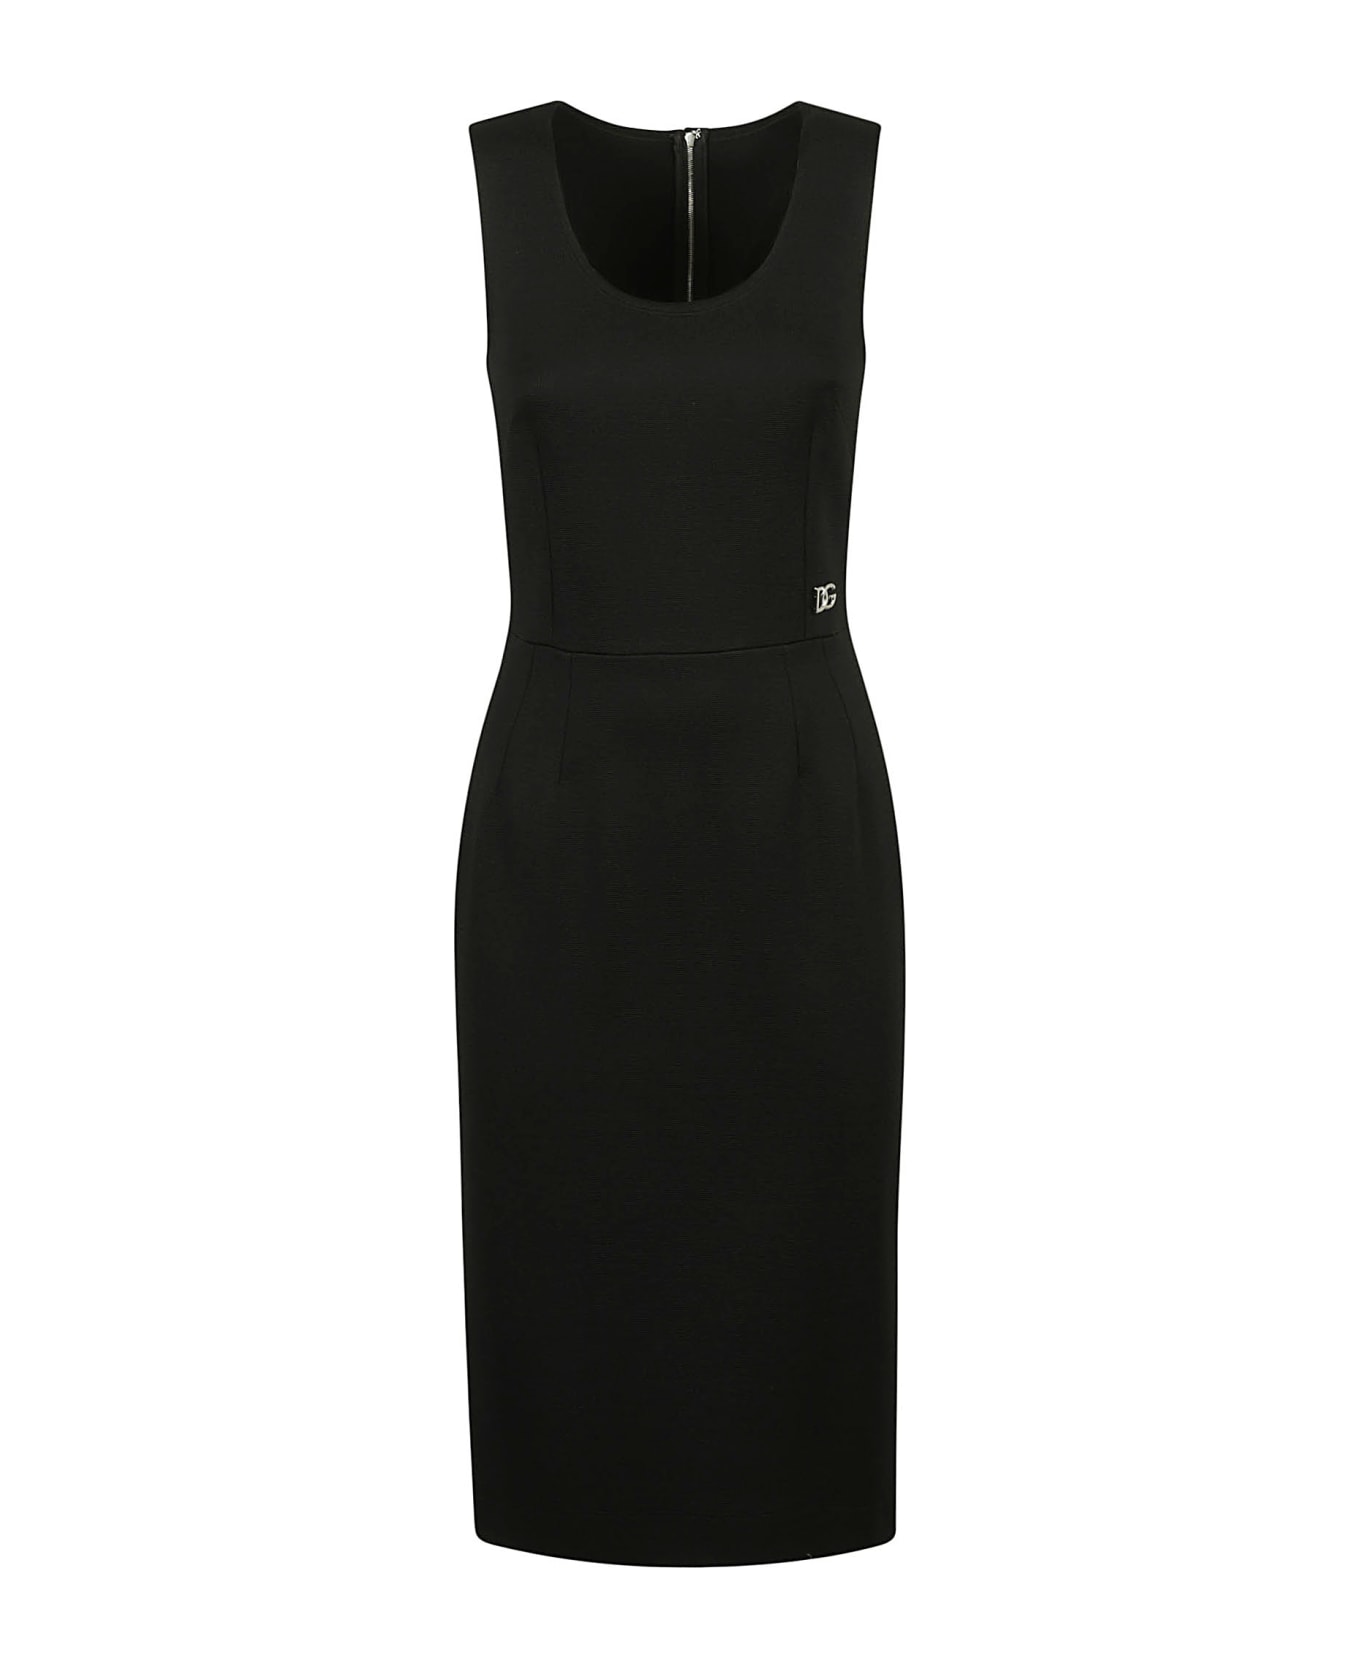 Dolce & Gabbana Back-zip Sleeveless Dress - Black